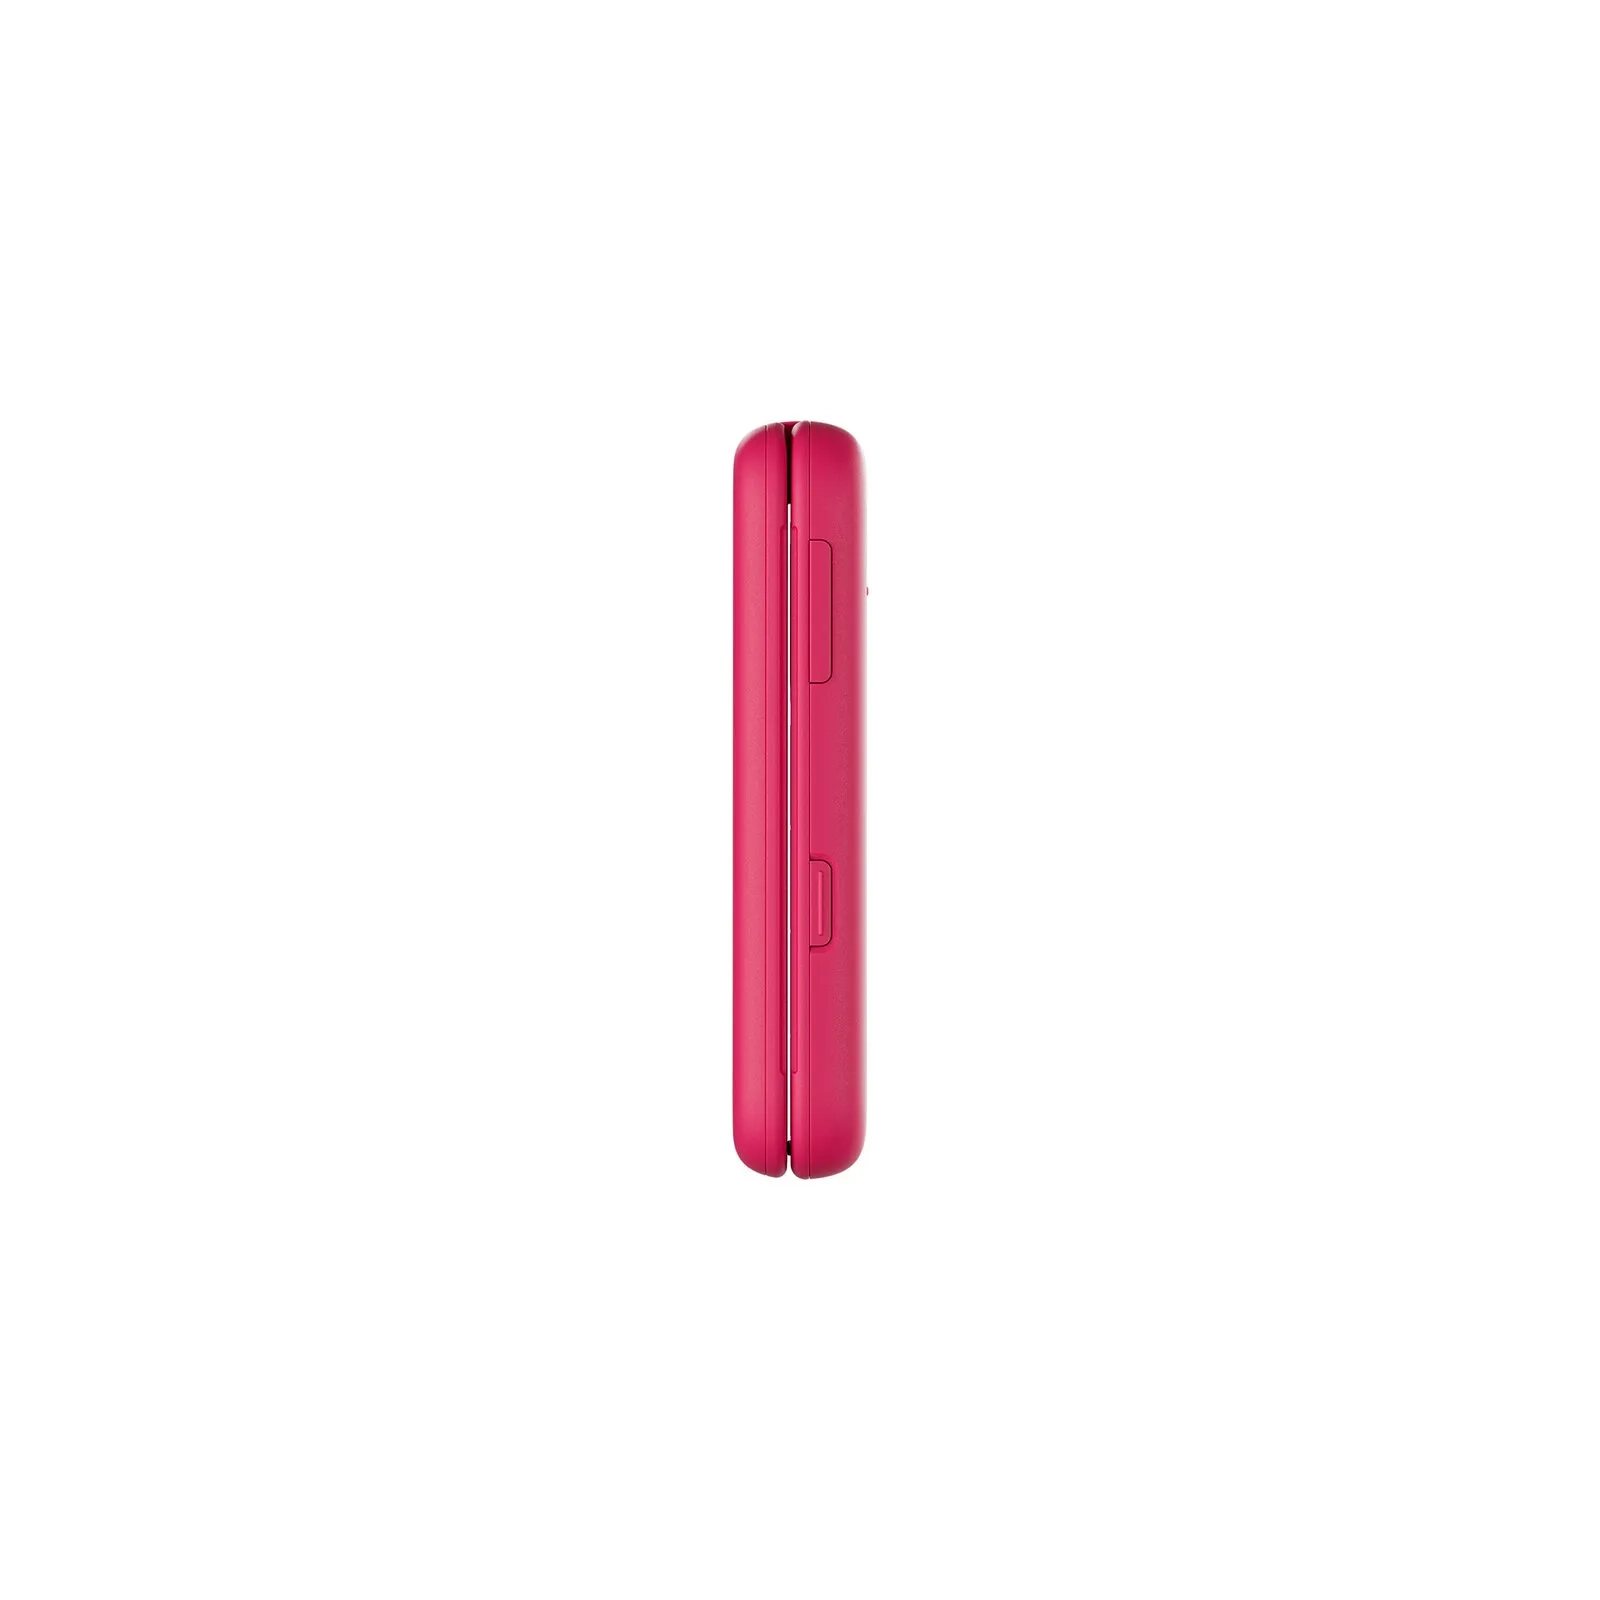 Мобільний телефон Nokia 2660 Flip Pink зображення 5